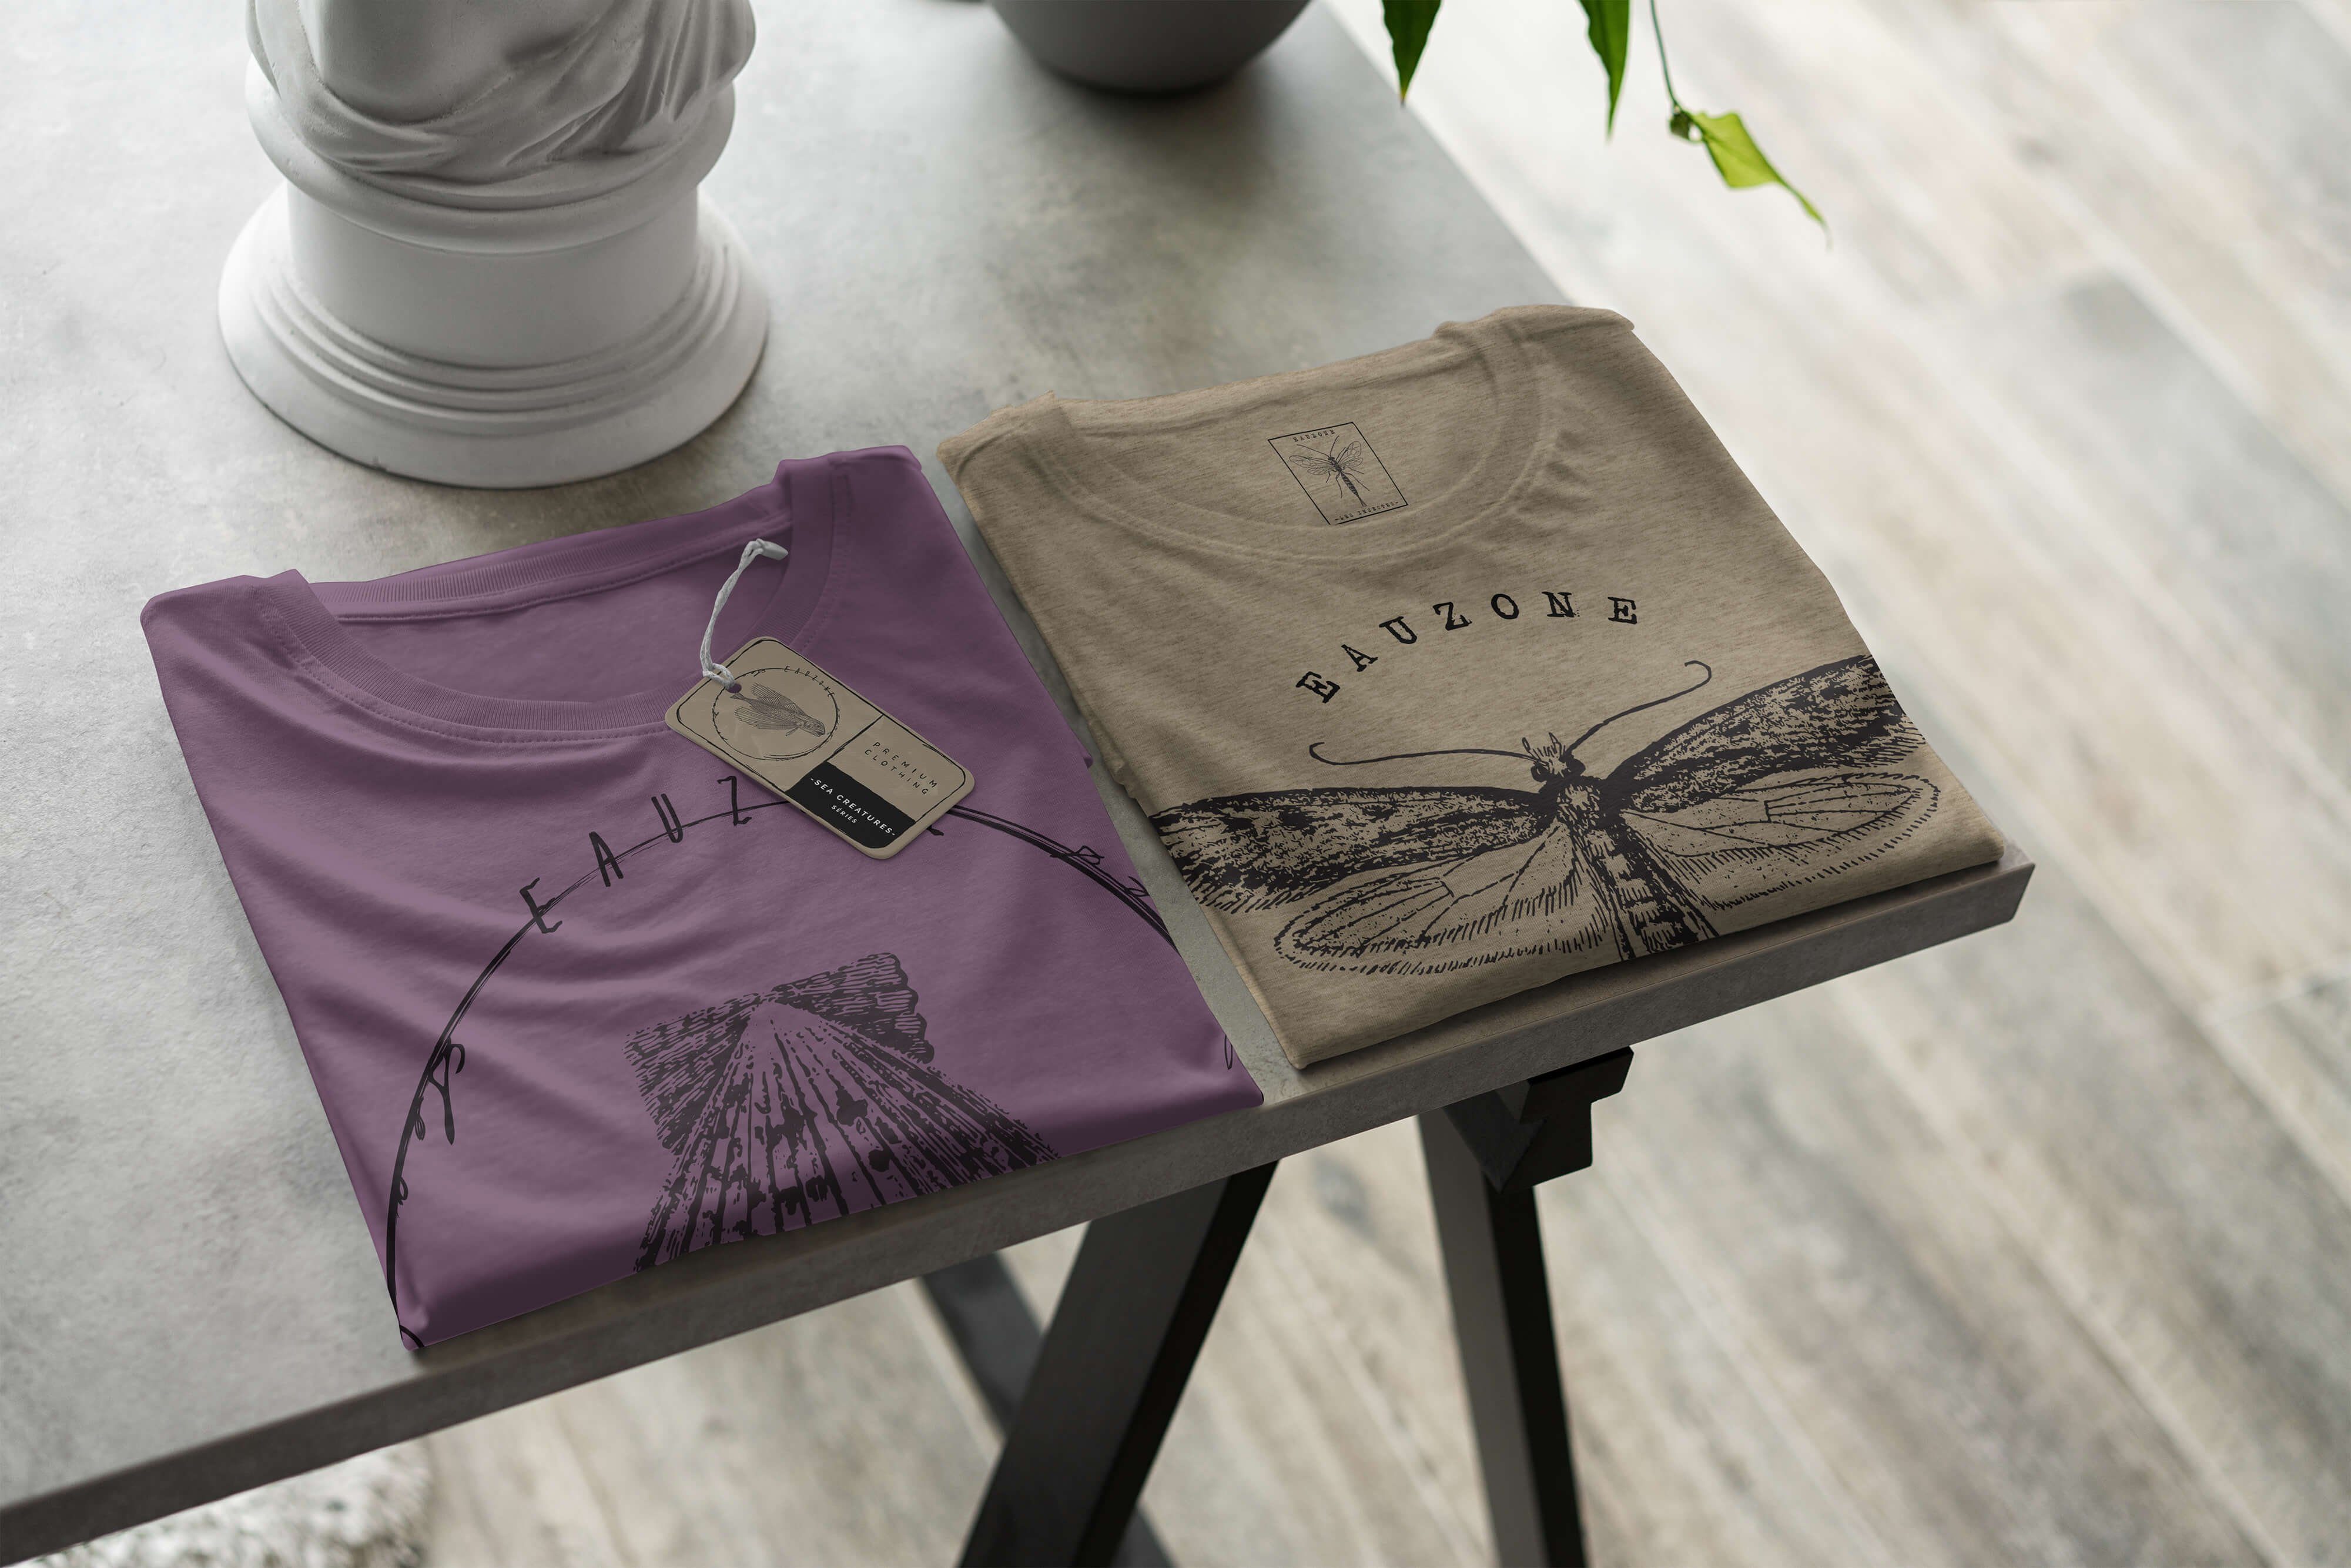 Sinus Art T-Shirt sportlicher 054 feine Sea T-Shirt Shiraz Creatures, und Tiefsee / Struktur - Schnitt Fische Sea Serie